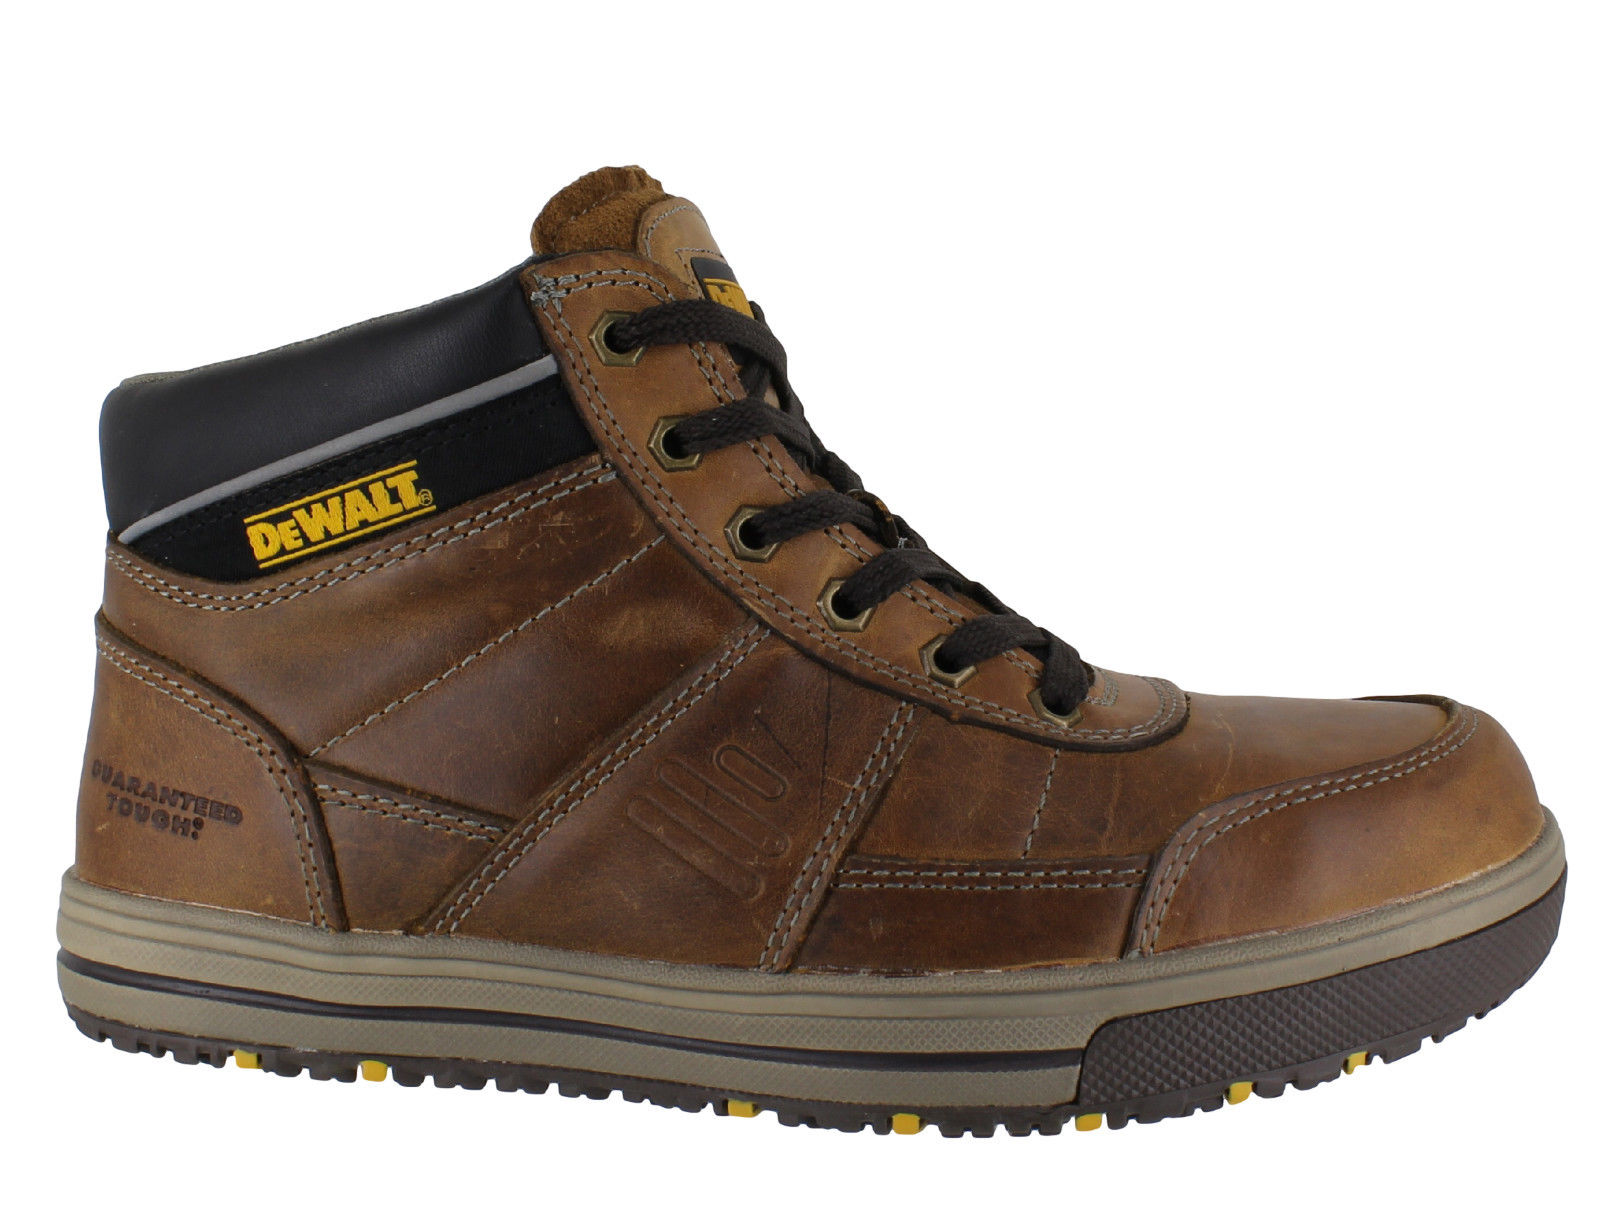 DeWalt Camden - Mens Safety Boots 